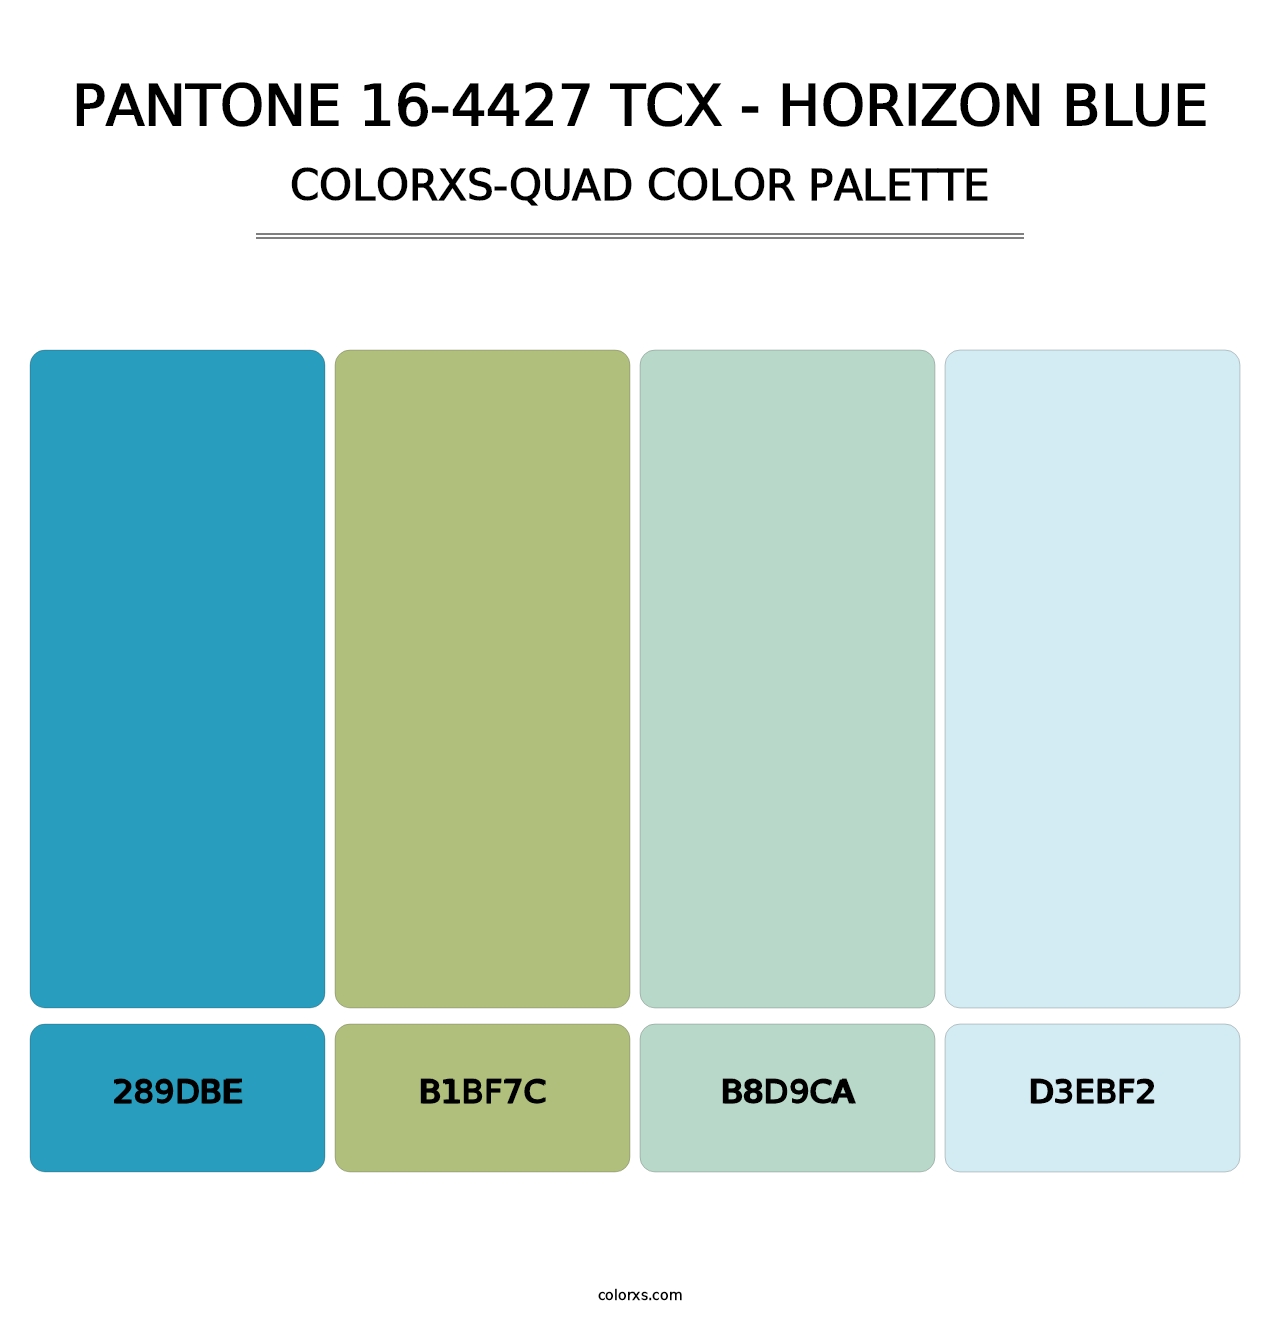 PANTONE 16-4427 TCX - Horizon Blue - Colorxs Quad Palette